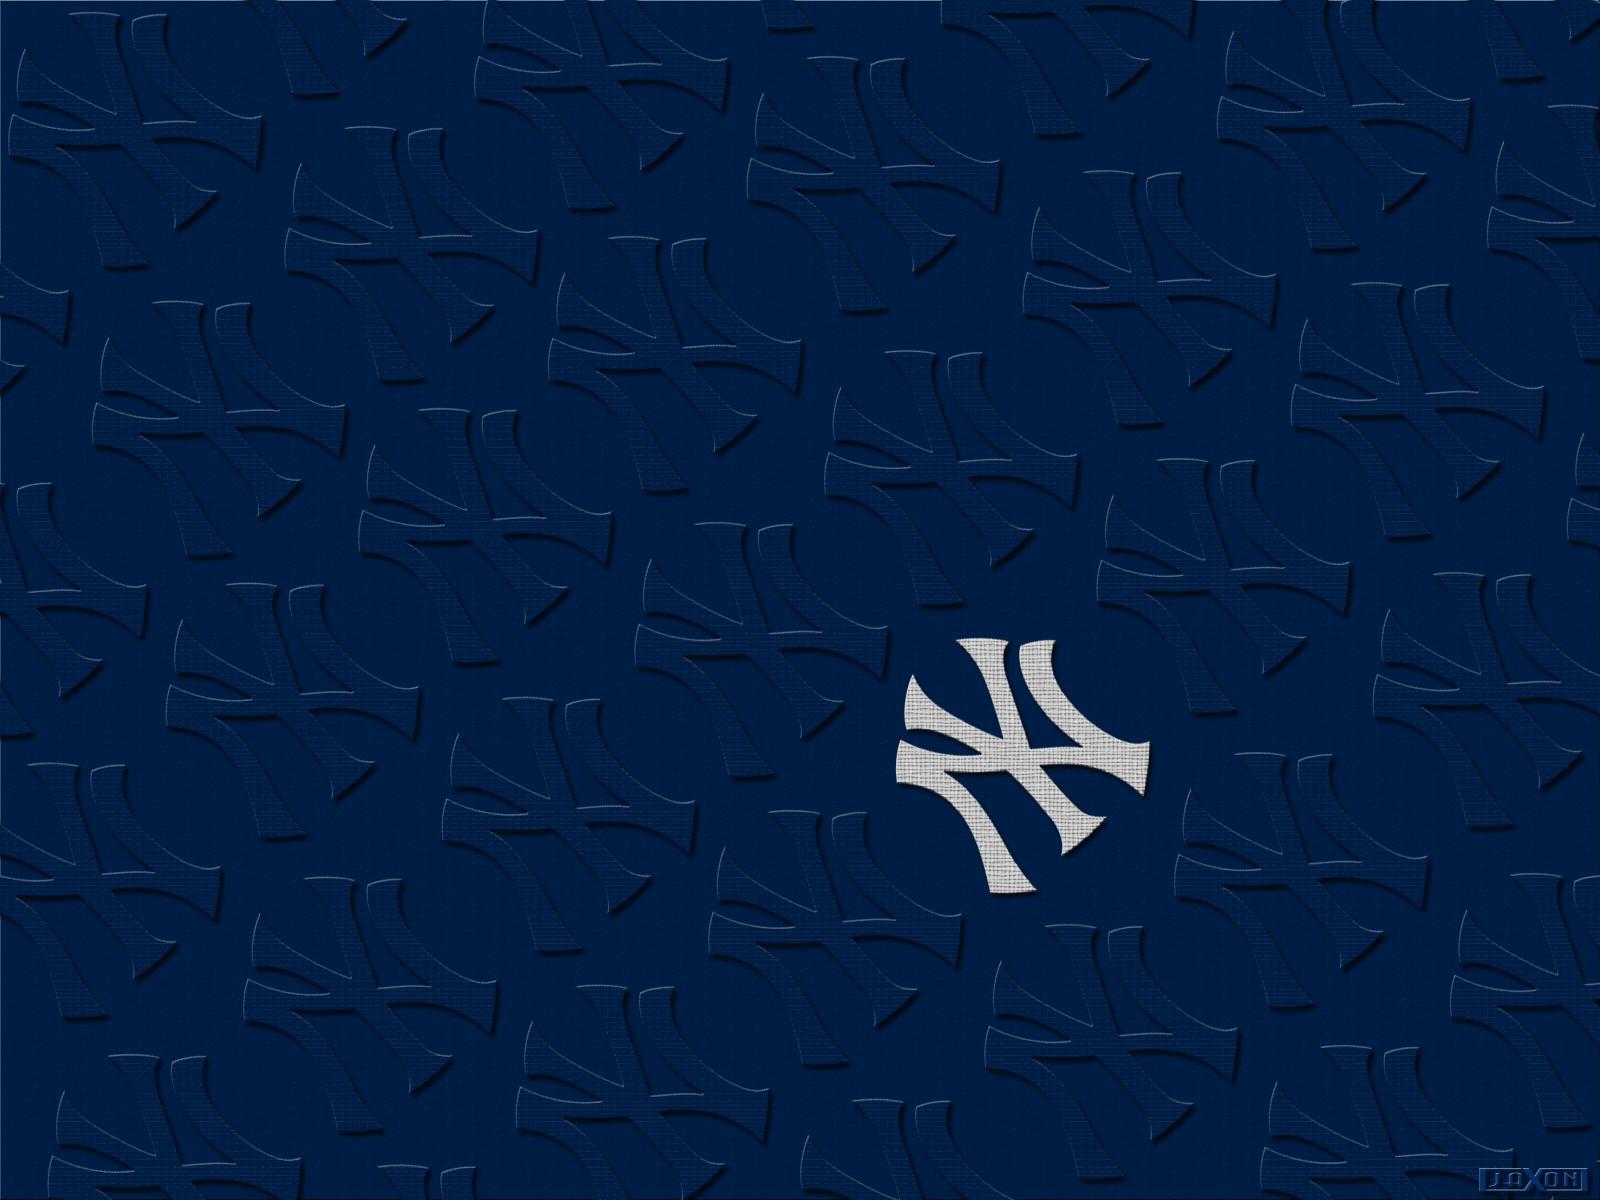 New York Yankees wallpapers.